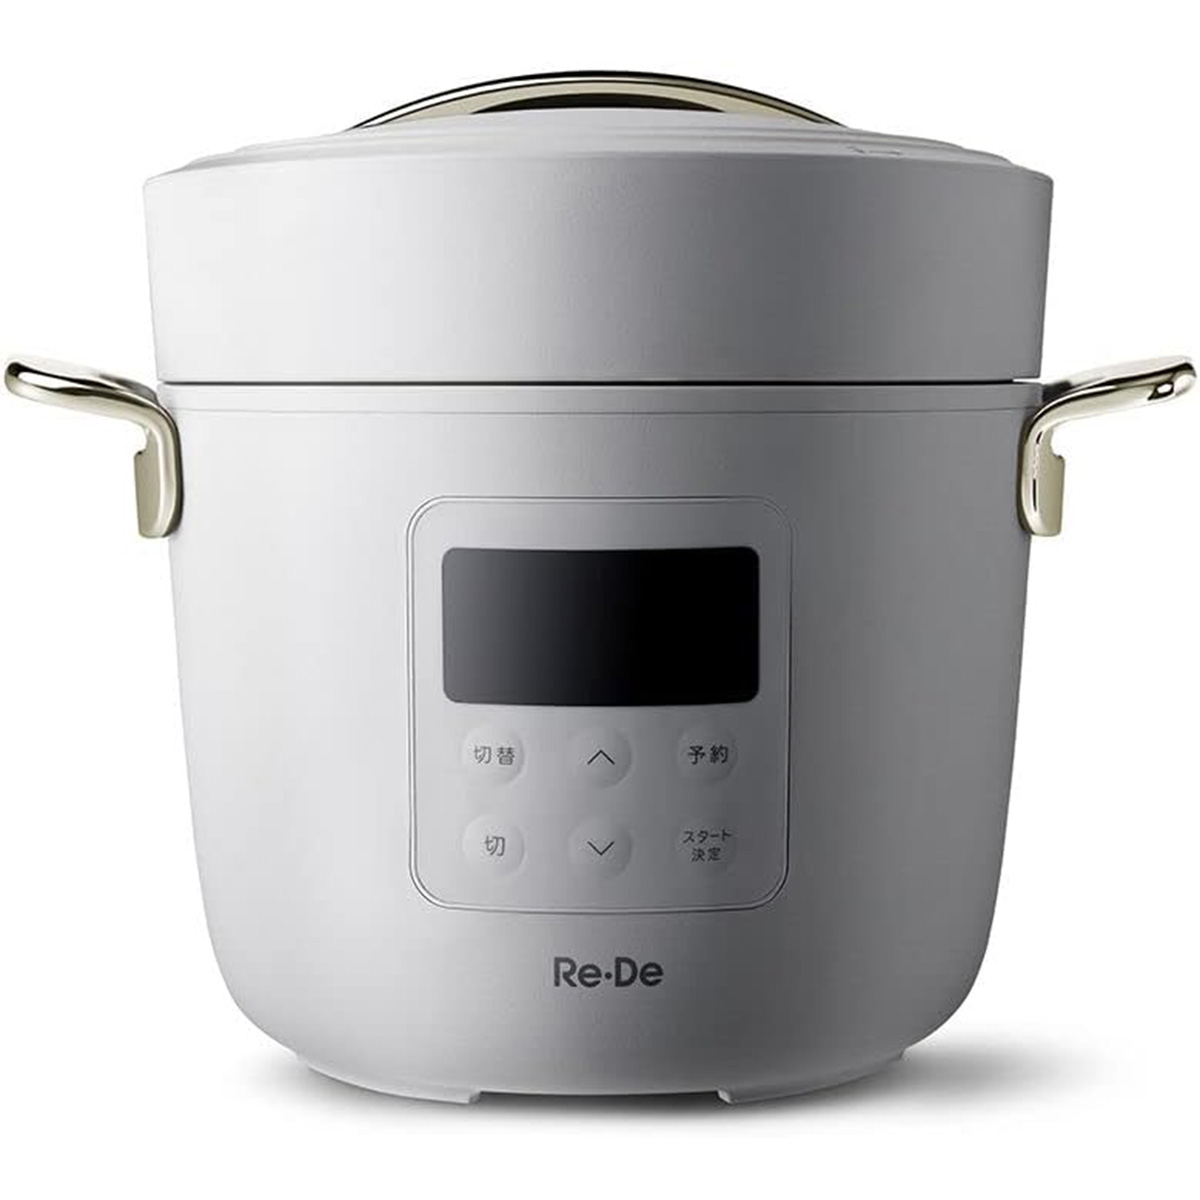 【5年保証付】Re・De Pot リデポット 電気圧力鍋 2L レシピブック付き 無水調理 炊飯 おしゃれ ホワイト